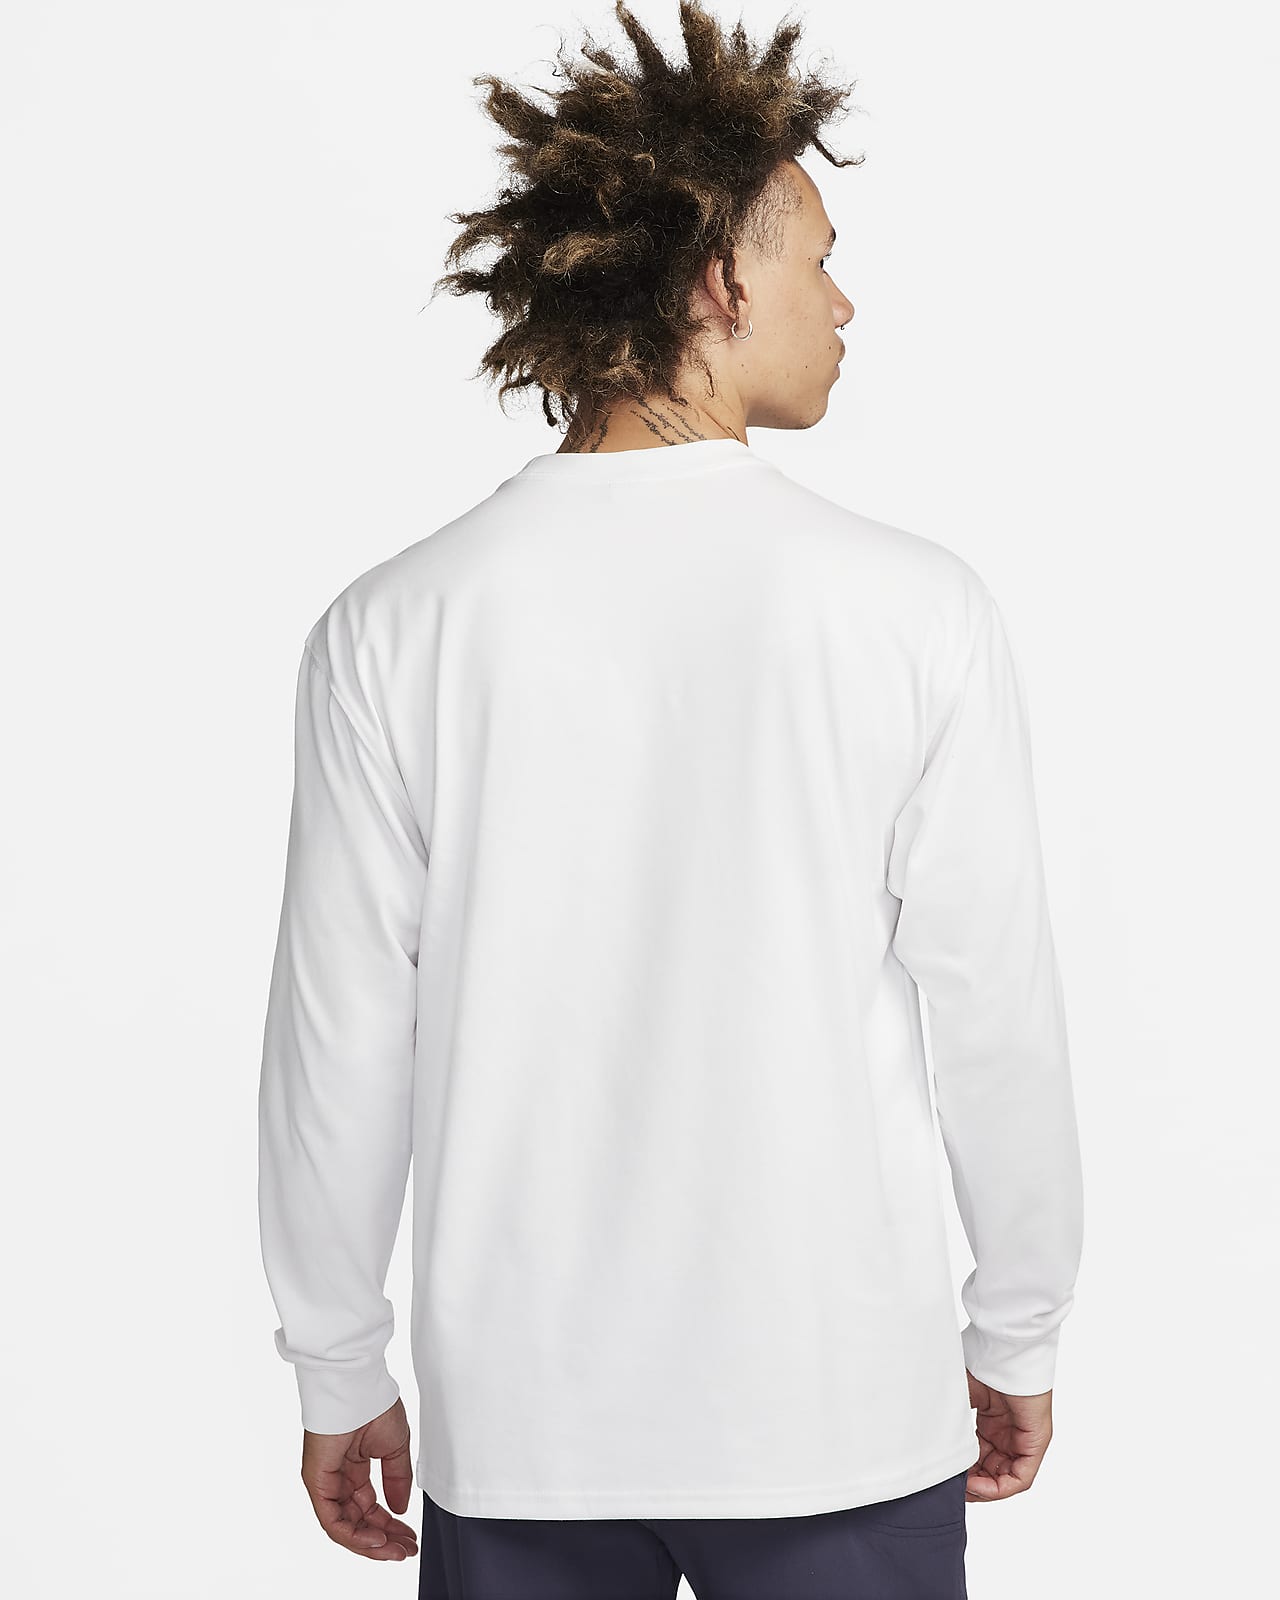 Nike ACG 'Lungs' Men's Long-Sleeve T-Shirt